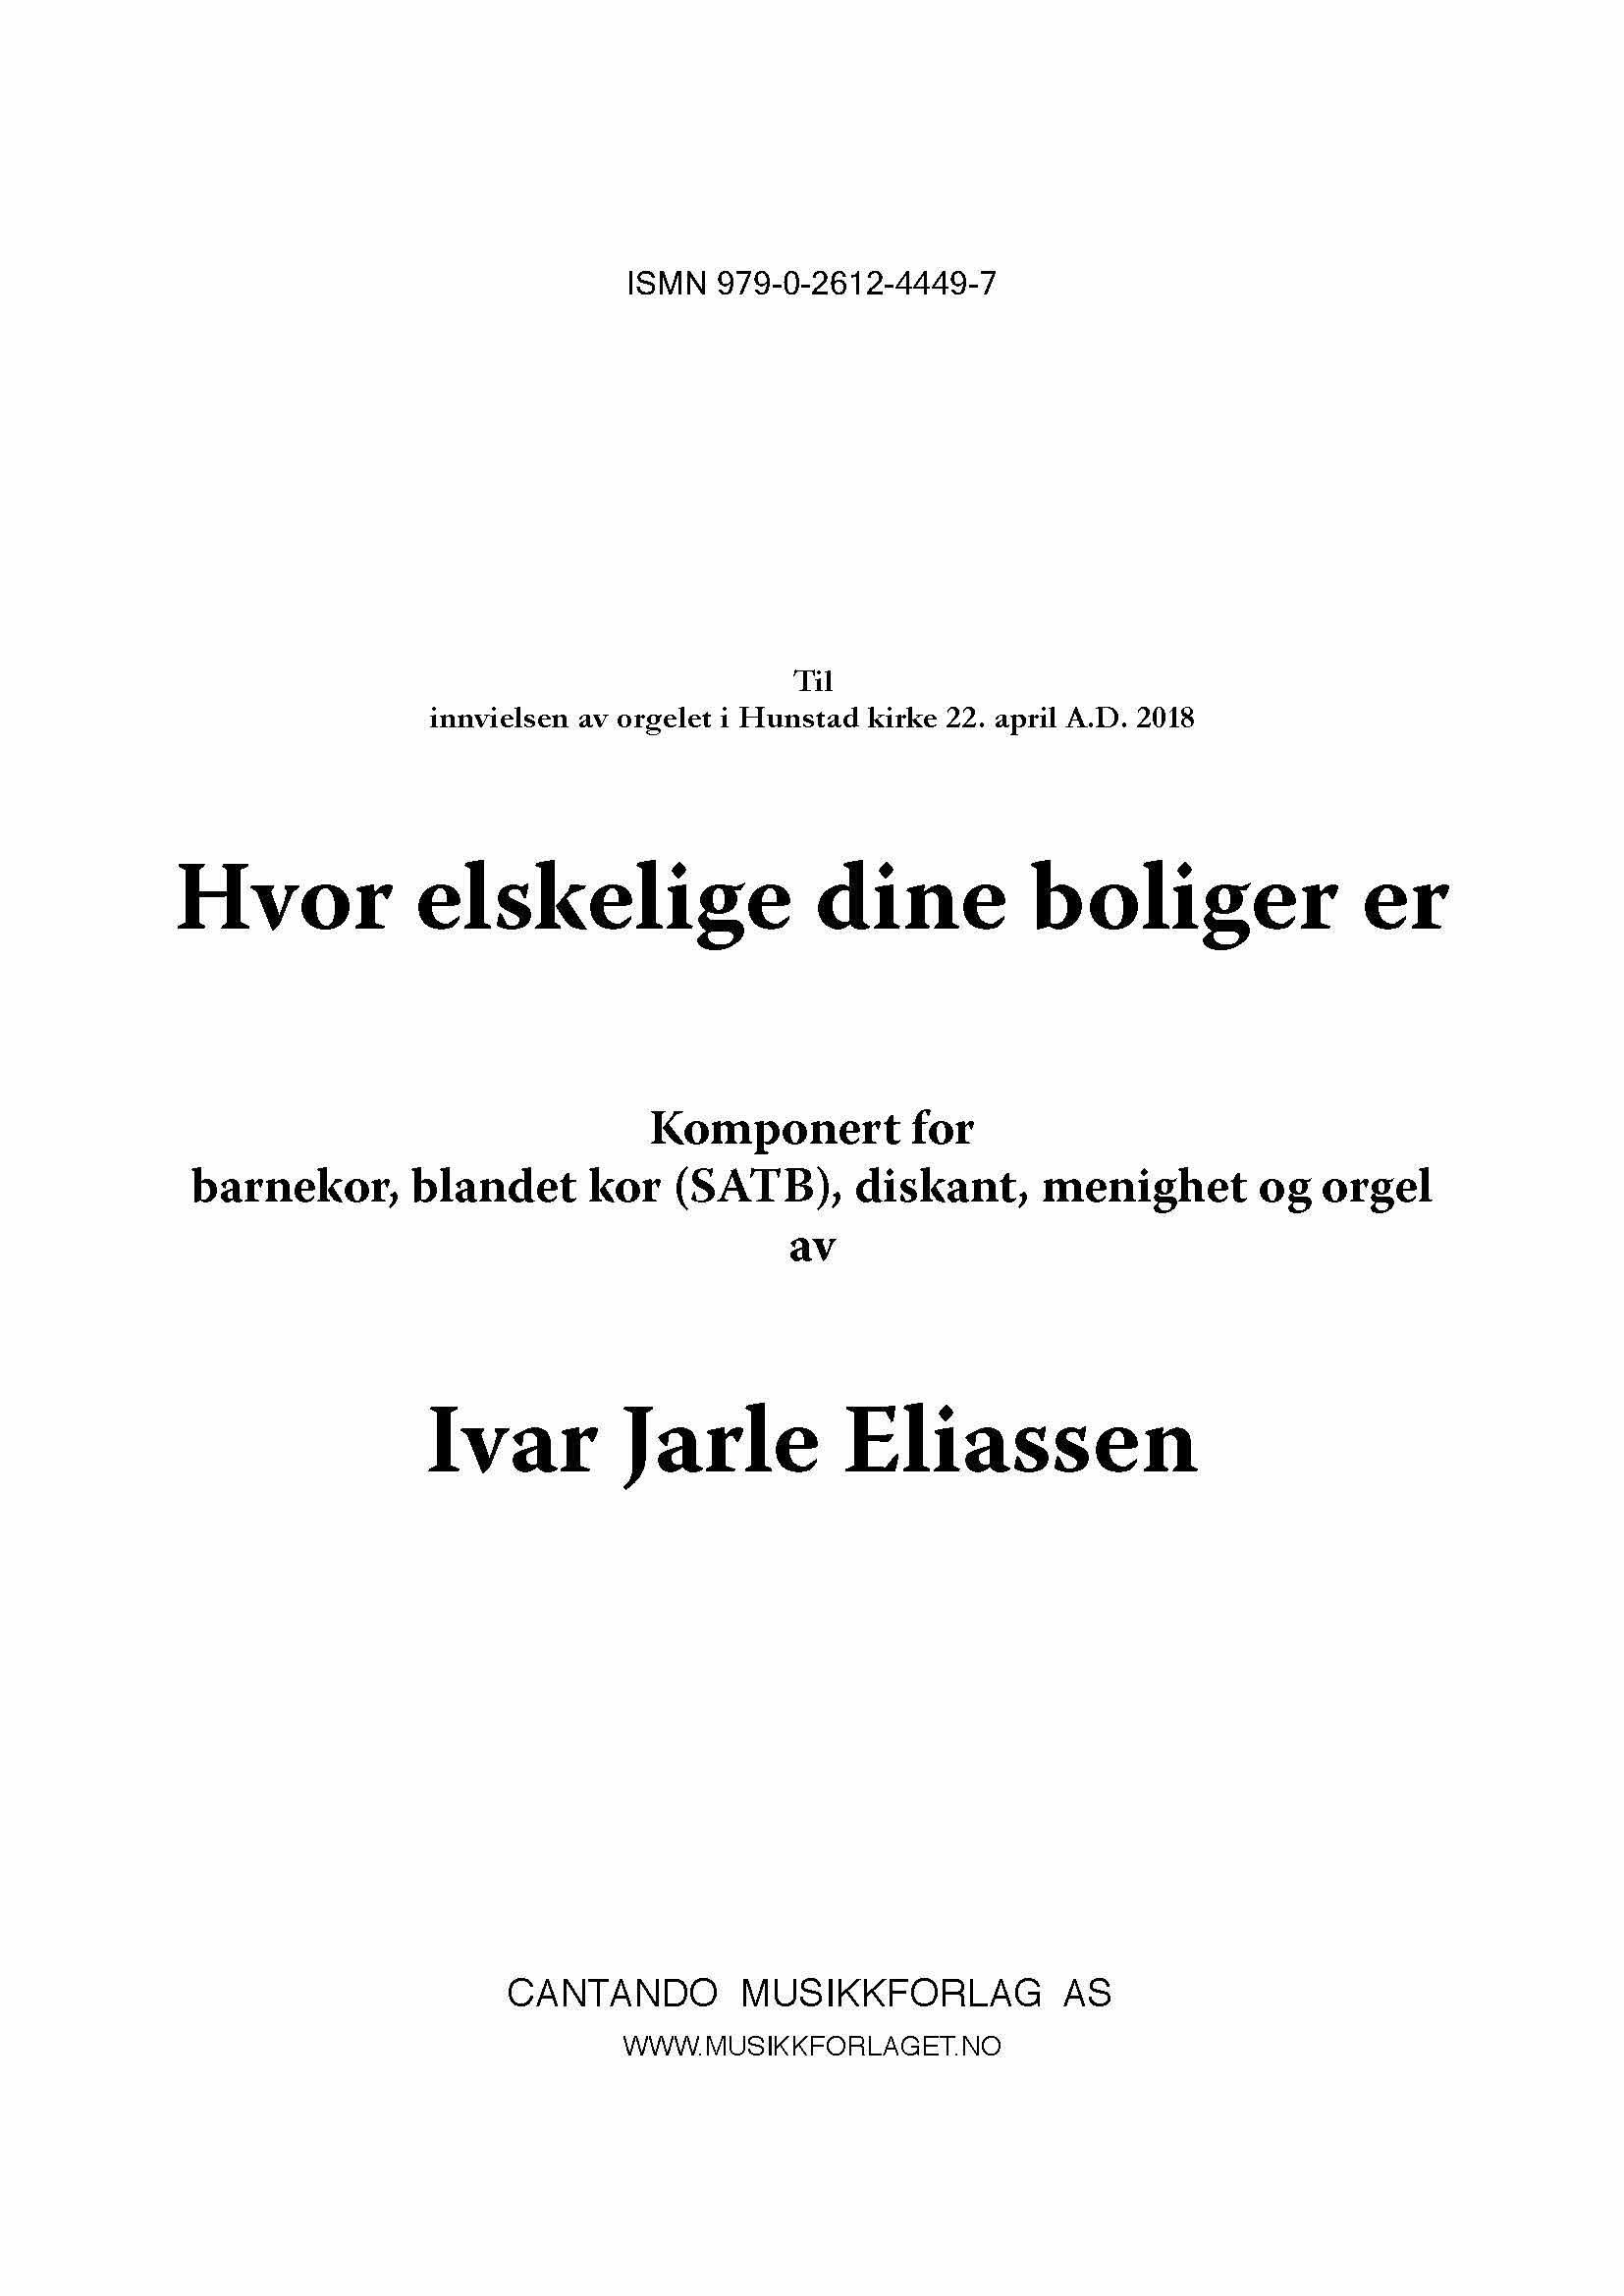 Hvor elskelige dine boliger er - Ivar Jarle Eliassen